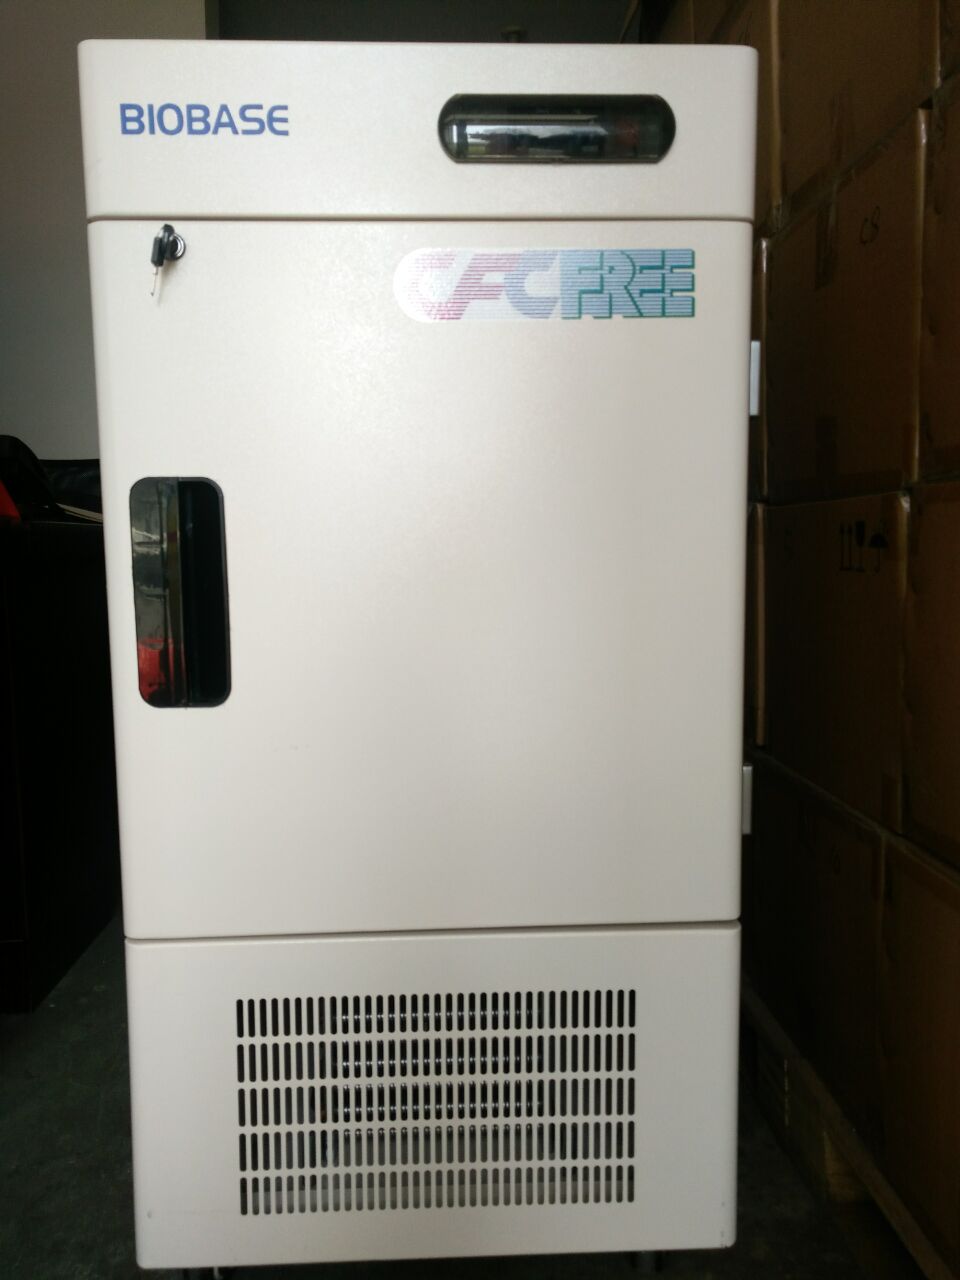 博科BDF86V348立式超低温冰箱